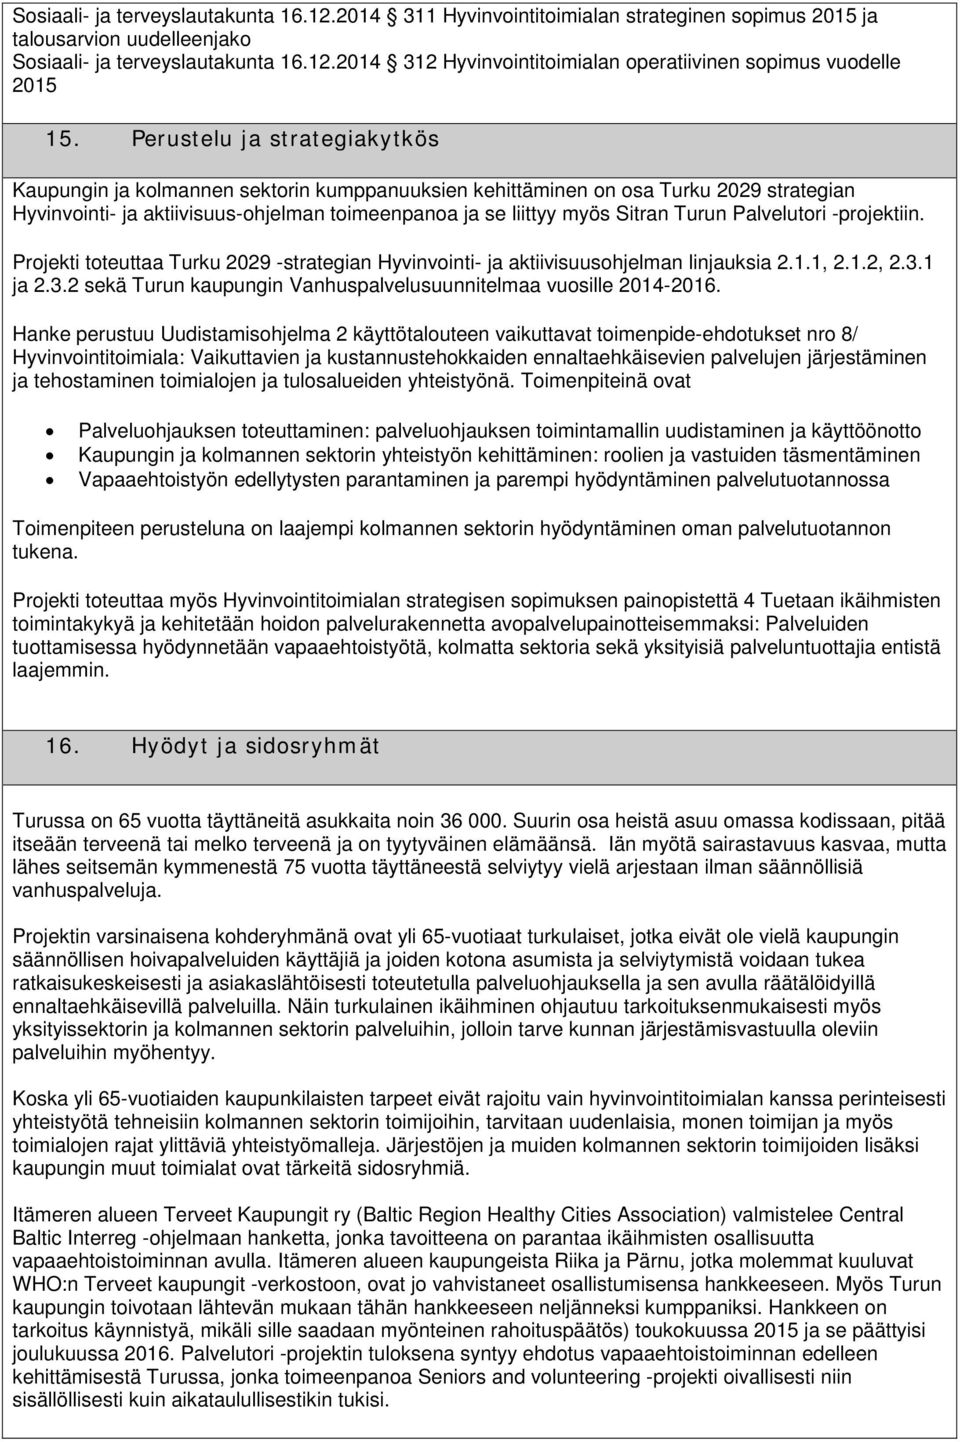 -projektiin. Projekti toteuttaa Turku 2029 -strategian Hyvinvointi- ja aktiivisuusohjelman linjauksia 2.1.1, 2.1.2, 2.3.1 ja 2.3.2 sekä Turun kaupungin Vanhuspalvelusuunnitelmaa vuosille 2014-2016.